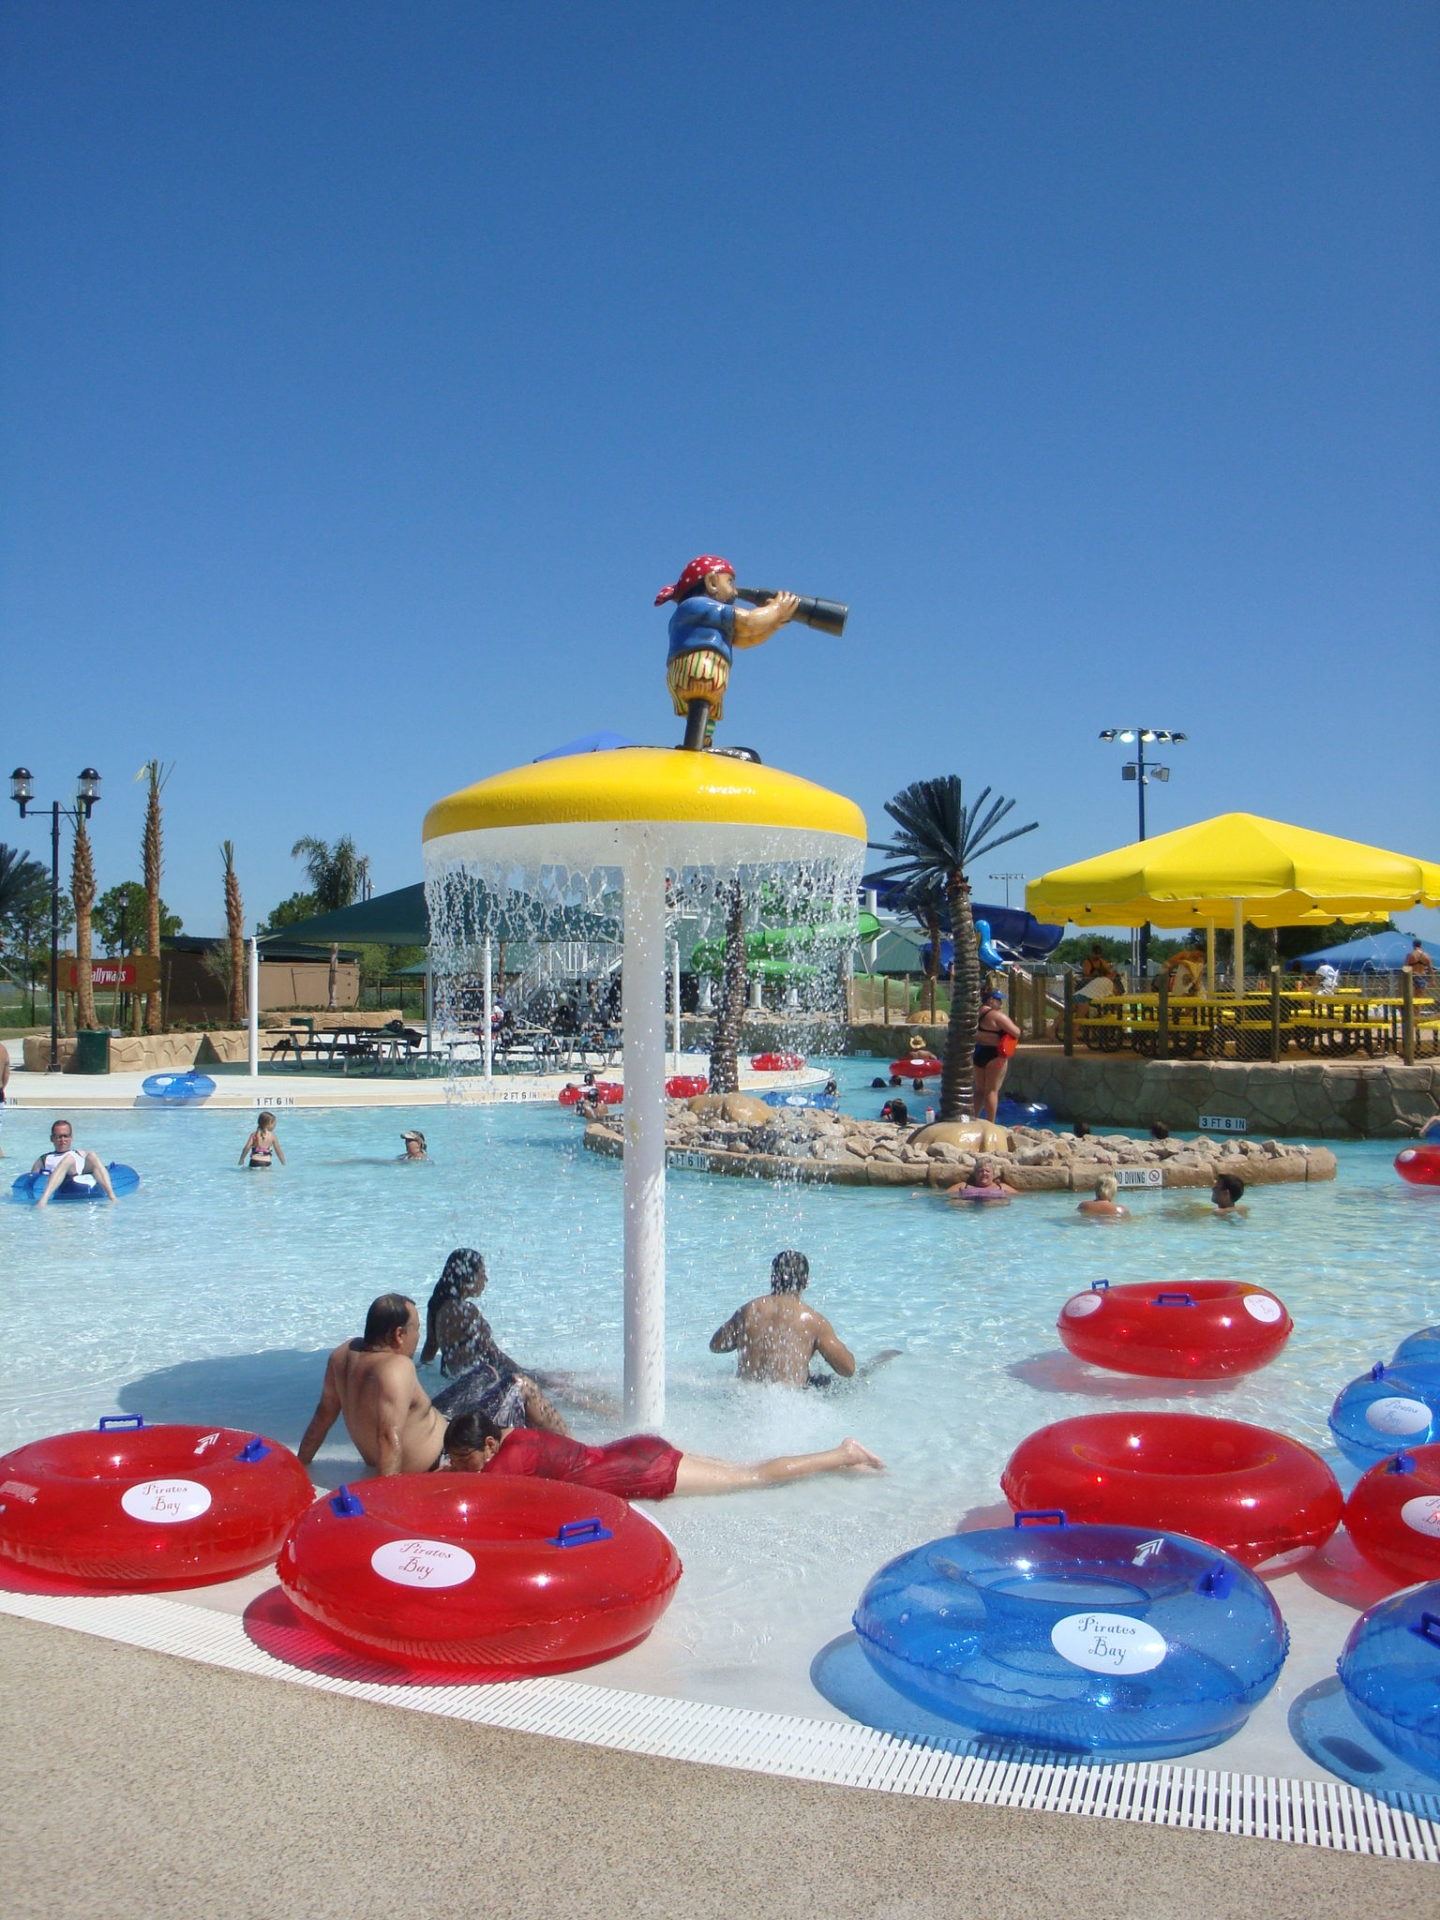 Pirate Bay Pool Service & Repair, Tampa FL